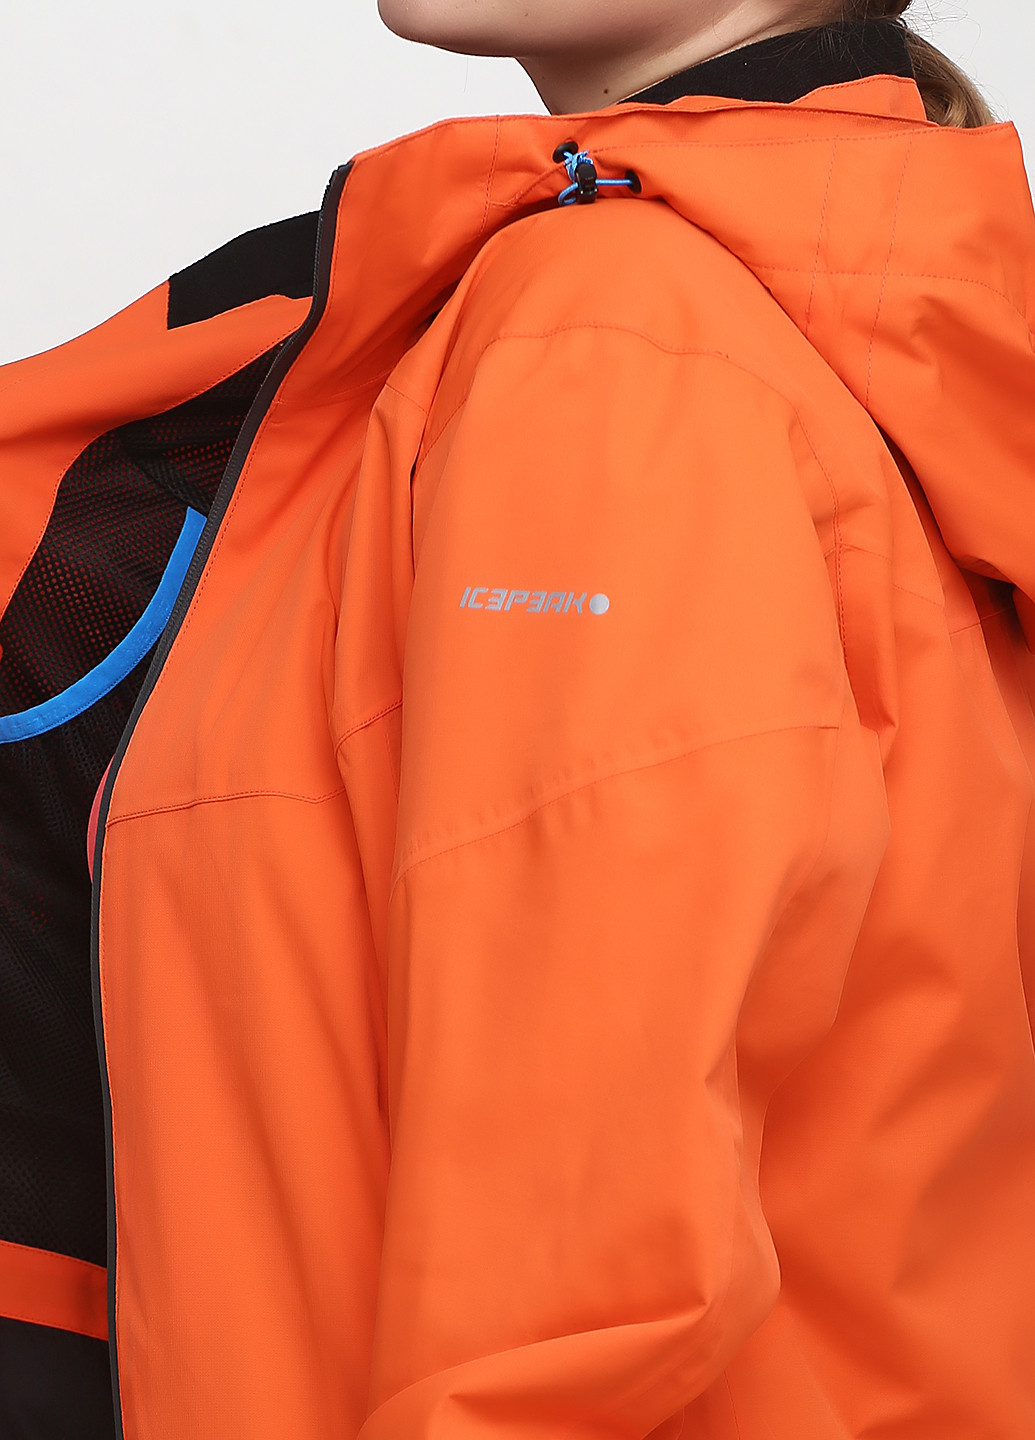 Оранжевая демисезонная куртка Icepeak